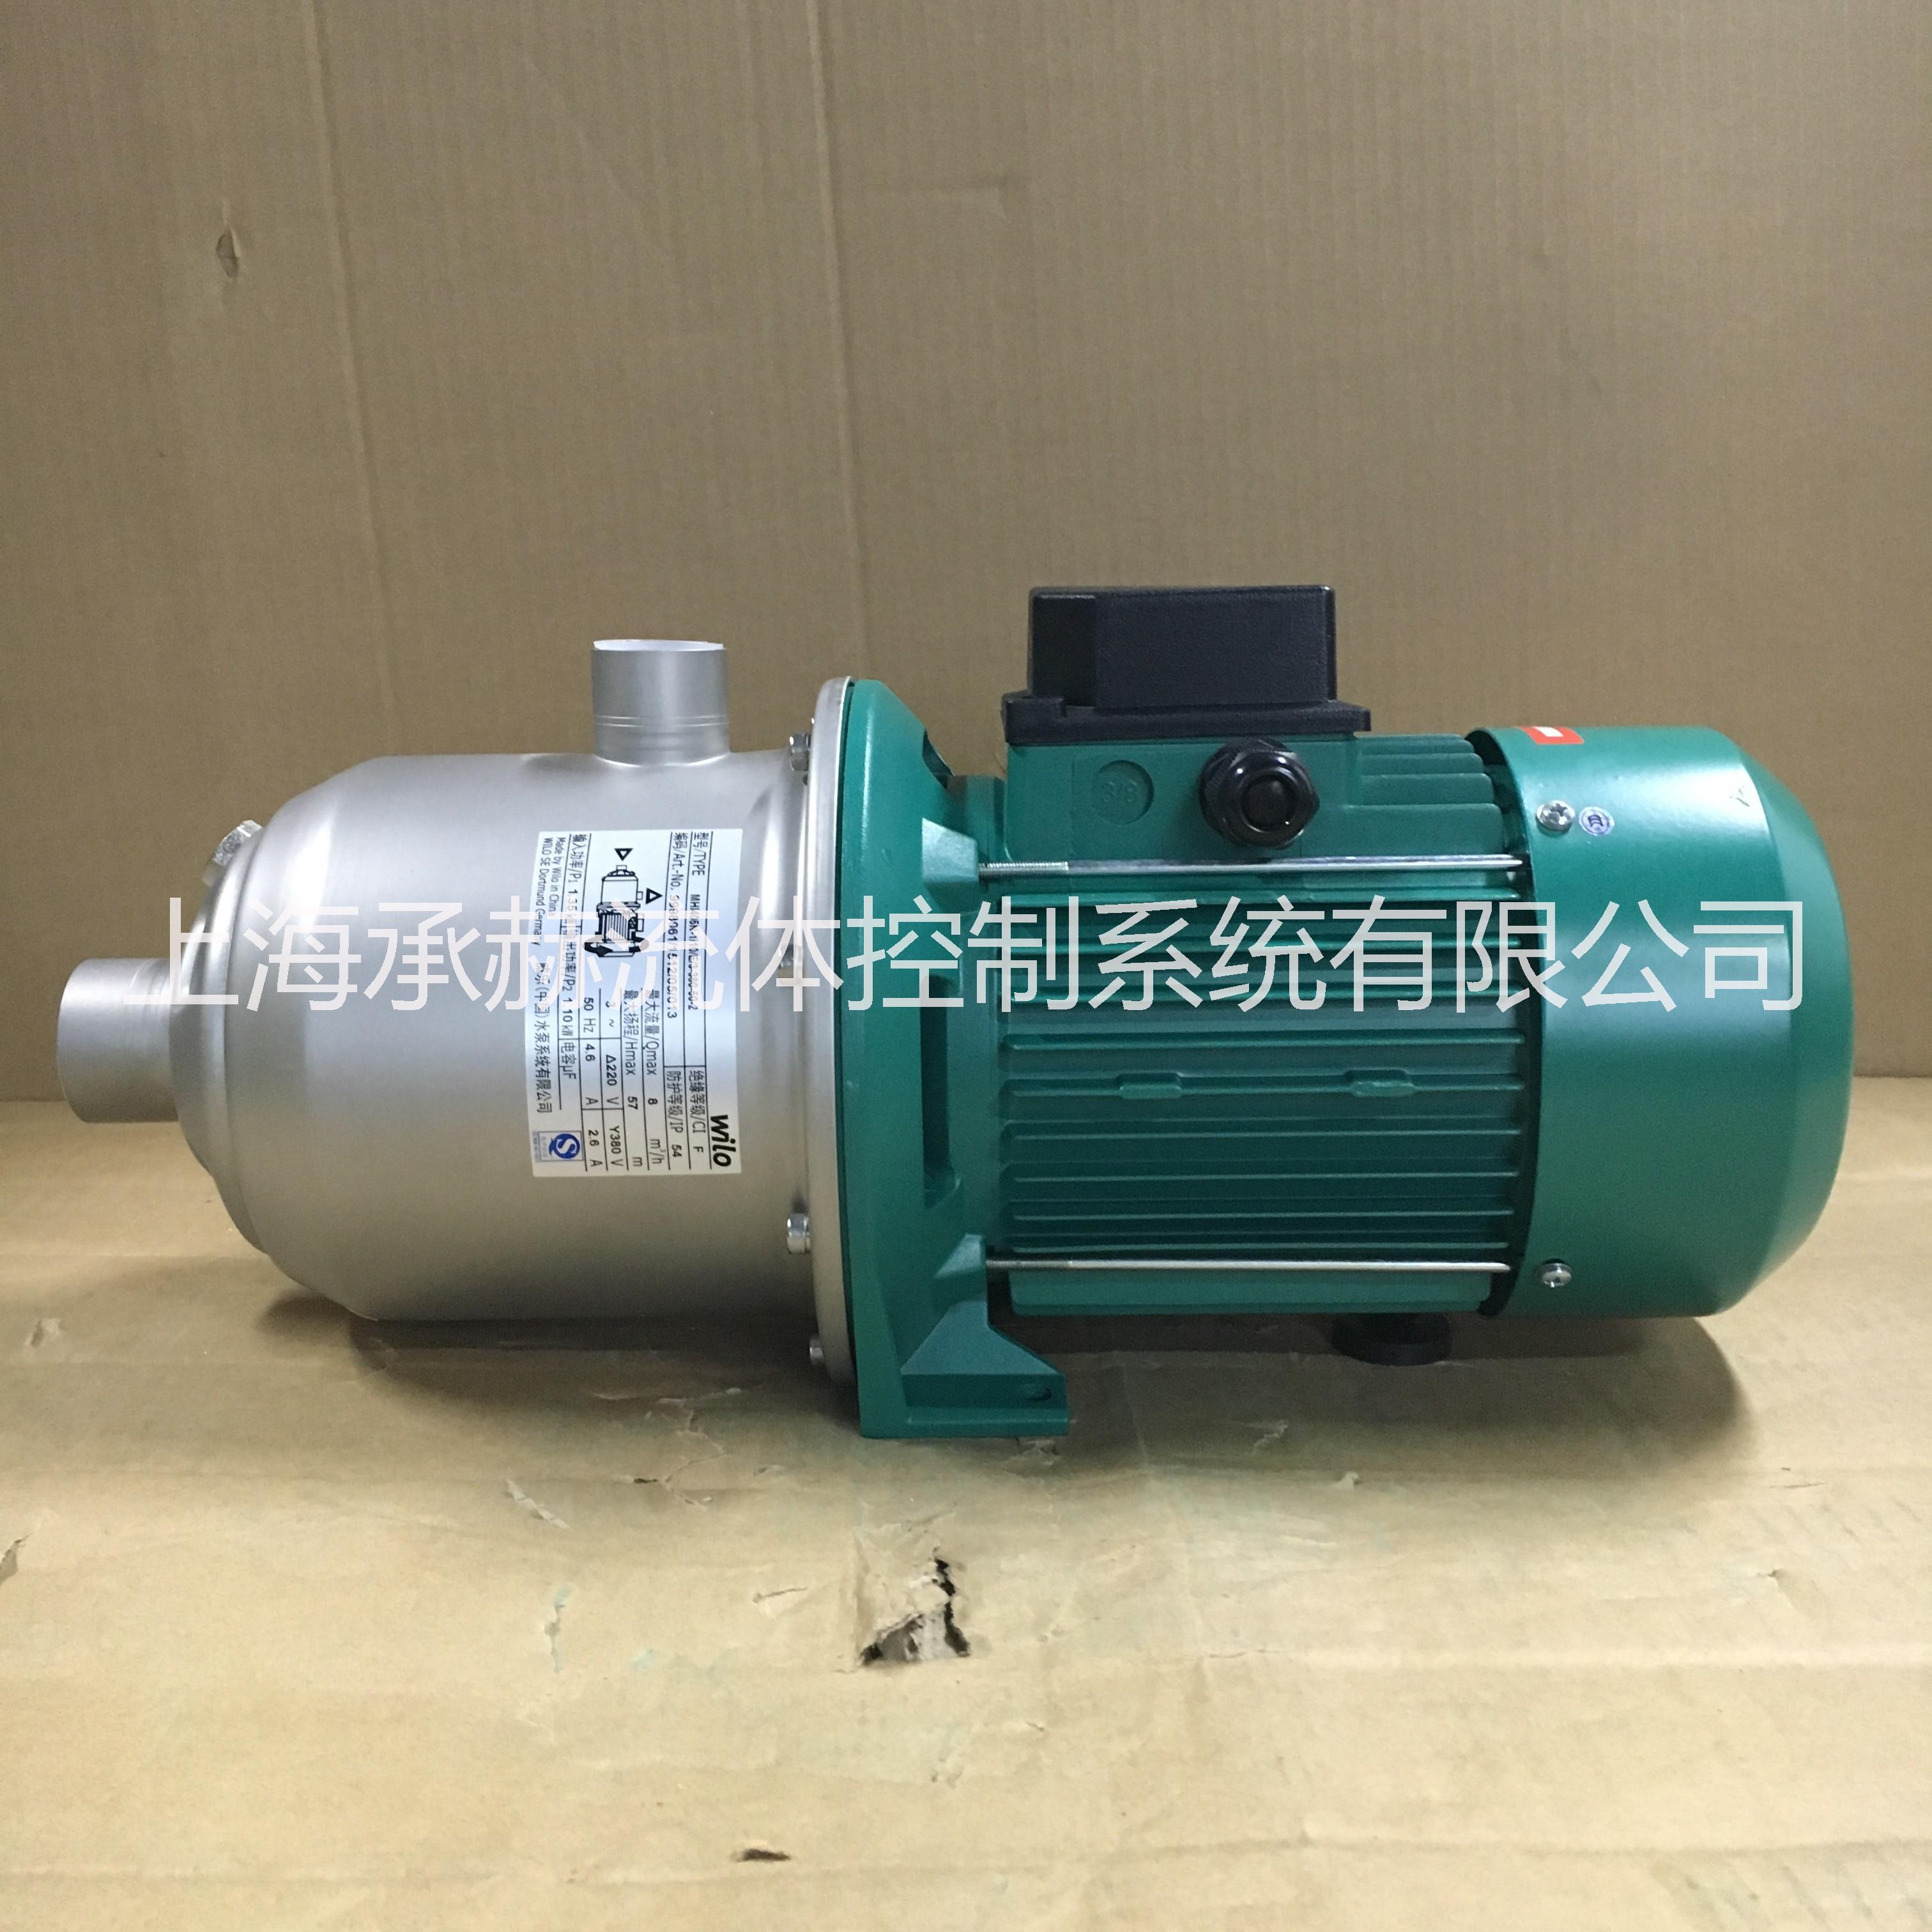 德国威乐水泵MHI405不锈钢卧式离心泵/高层生活用水增压泵